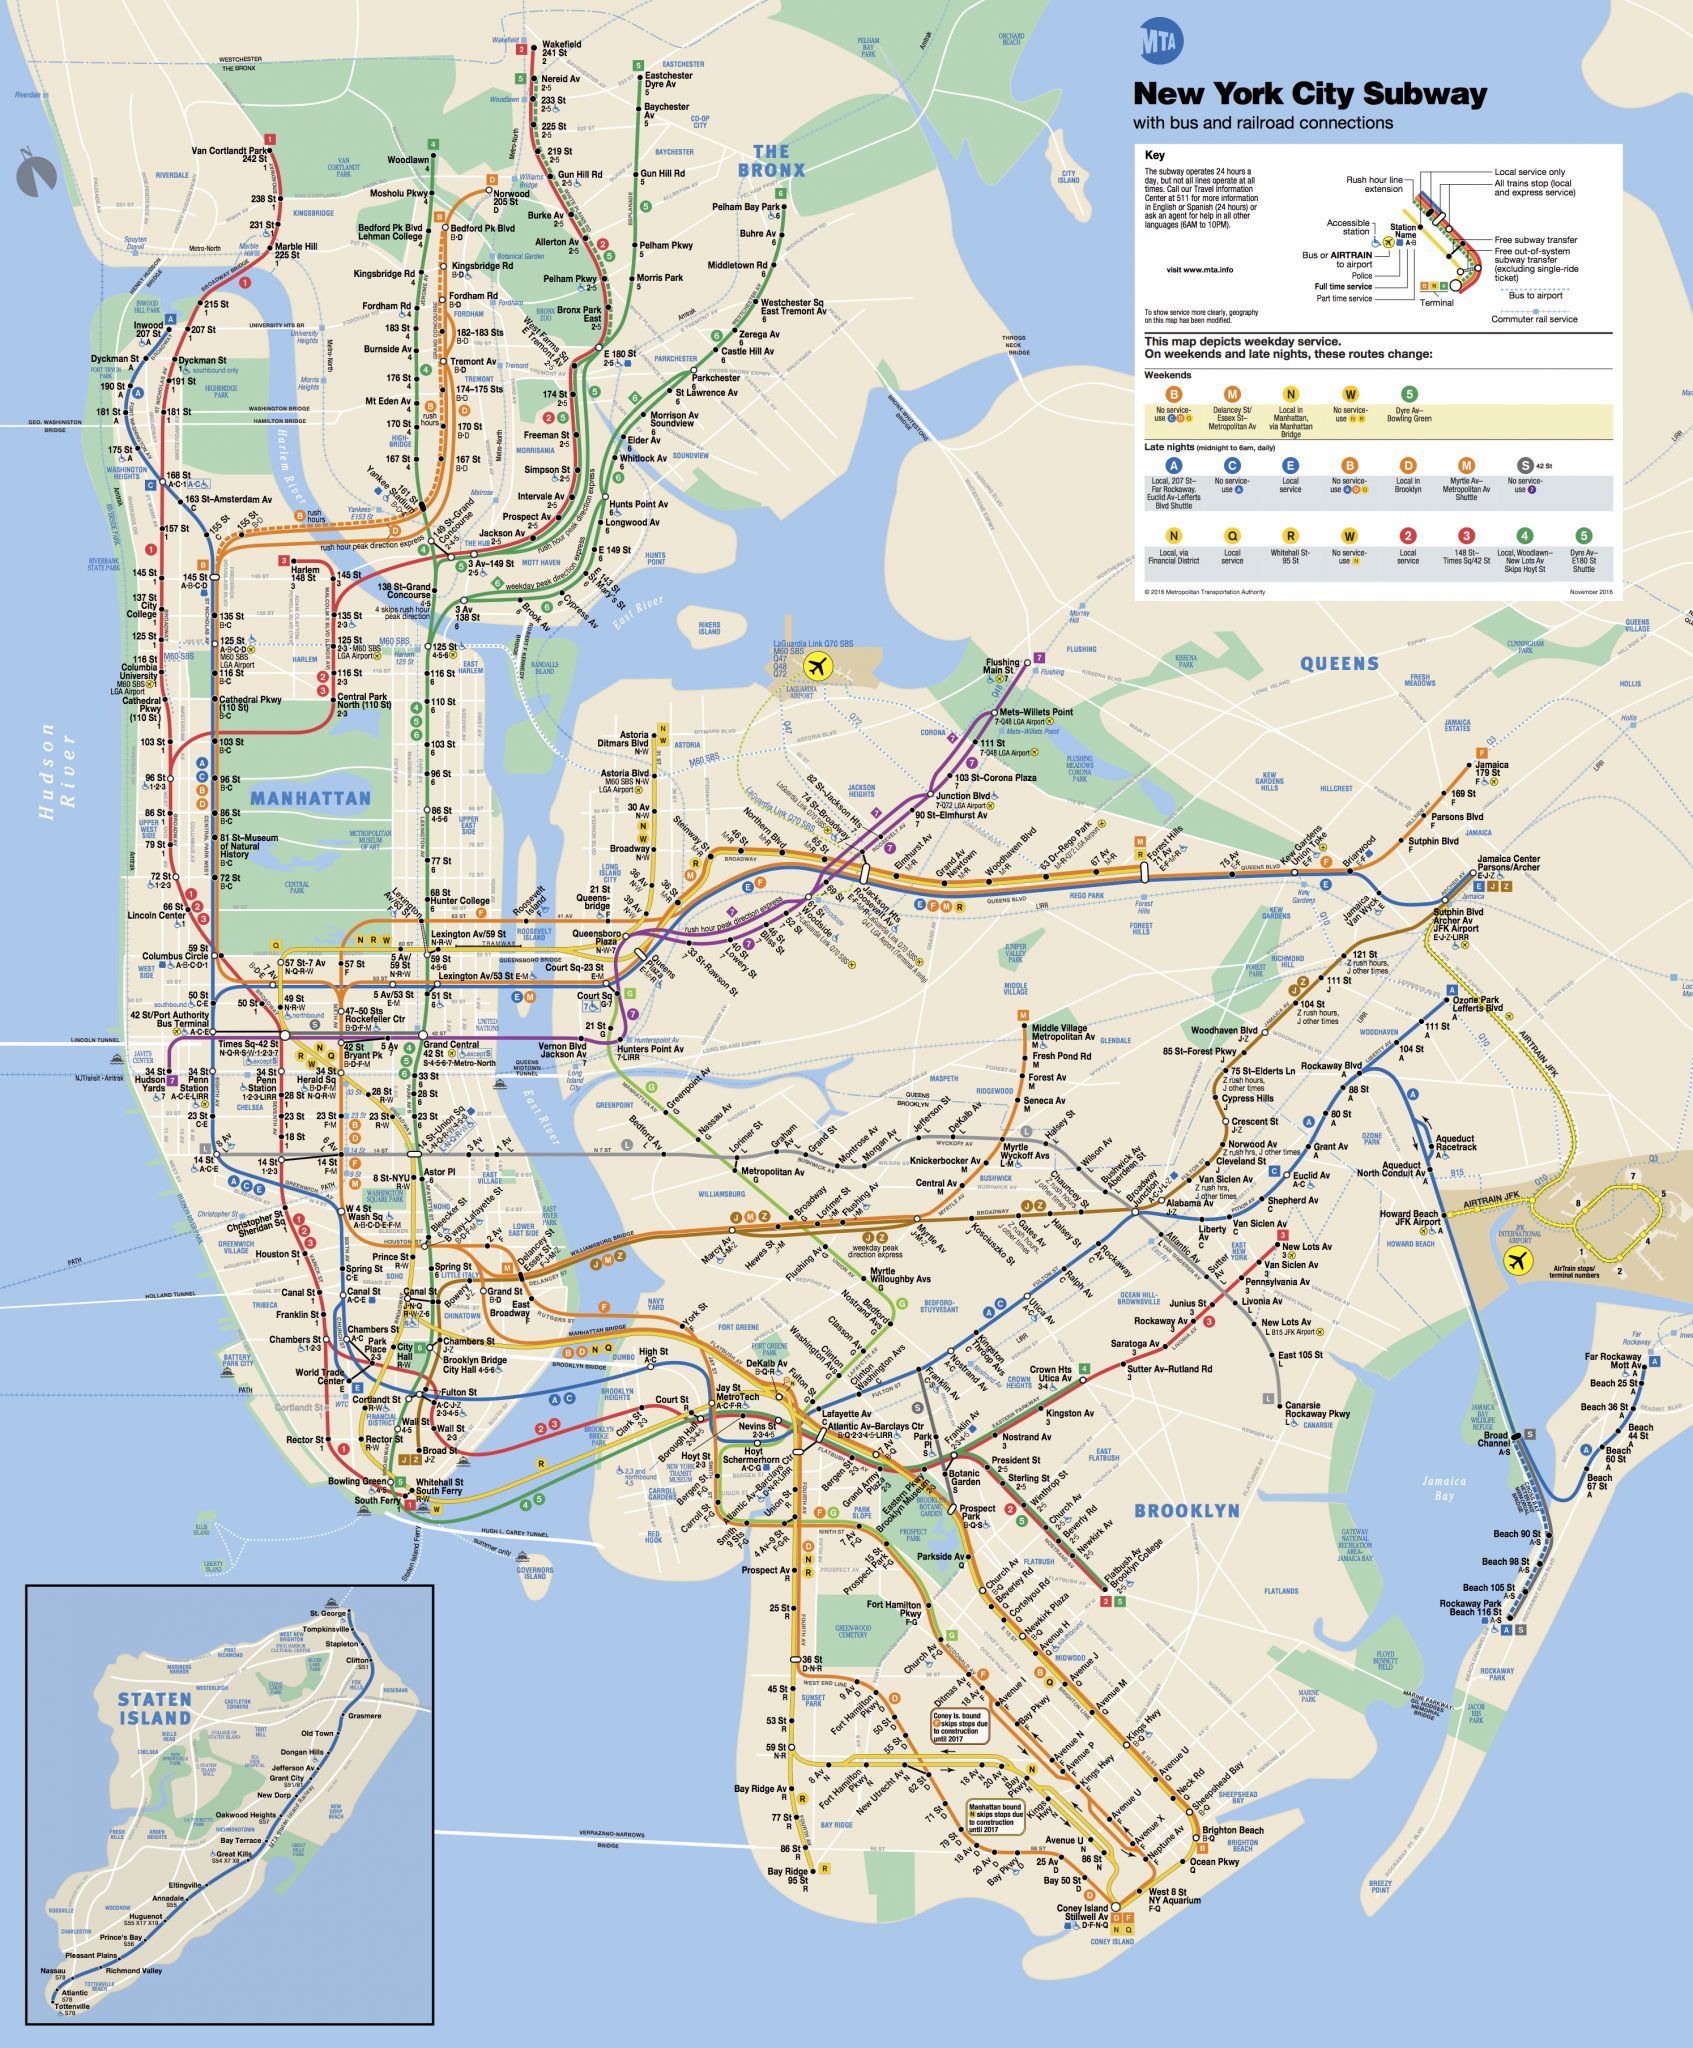 Mapa do metrô retirado do site oficial do MTA: http://web.mta.info/nyct/maps/subwaymap.pdf